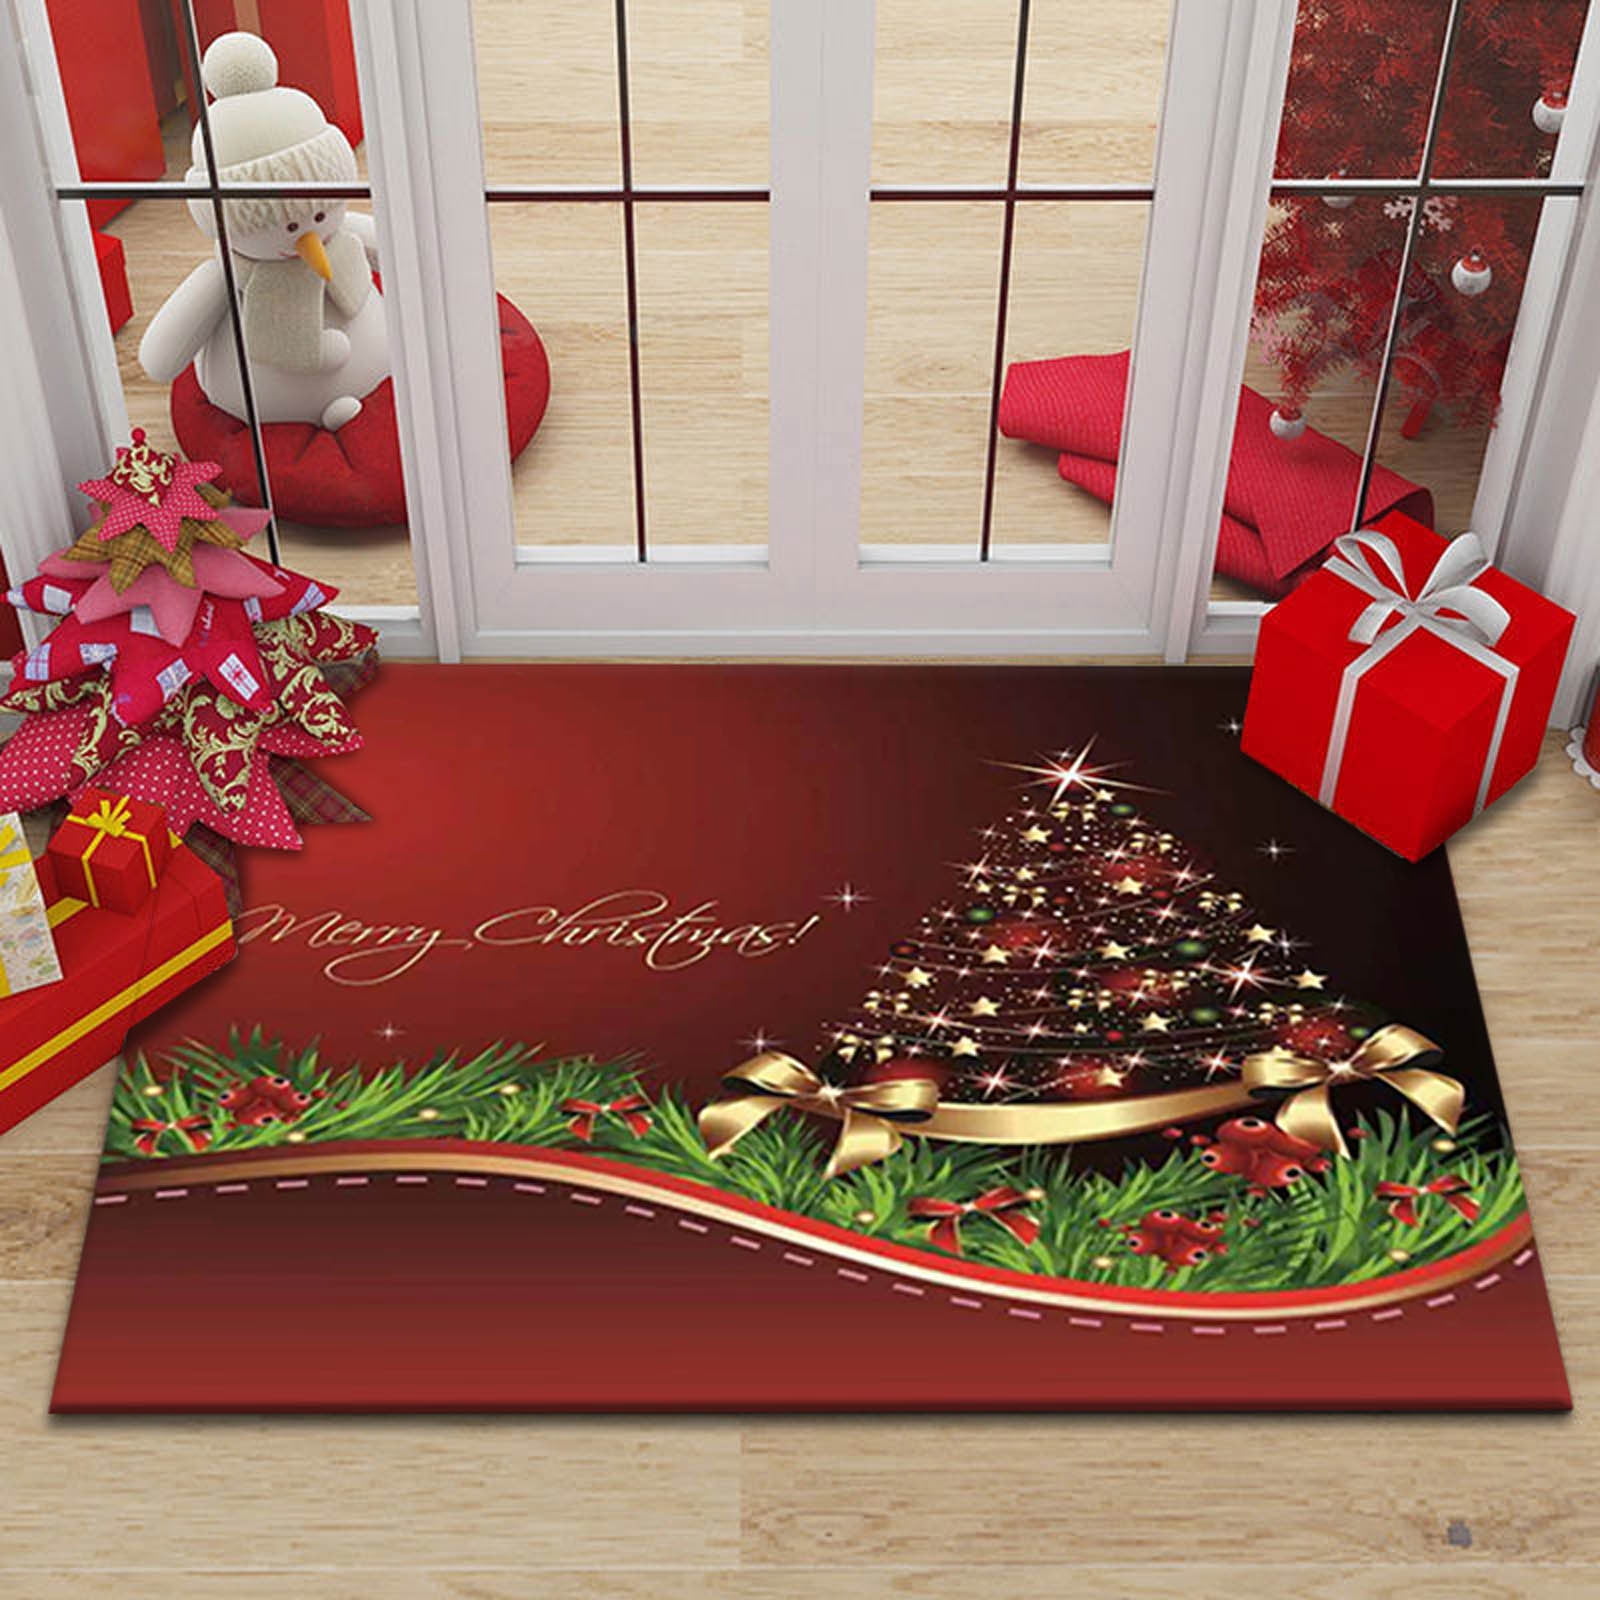 Clearanceeqwljwe Merry Christmas Door Mat Welcome Decor Christmas Floor Mat Outdoor Mats for Front Door,Indoor Mats for Entryway,24x16 inch,Burlap